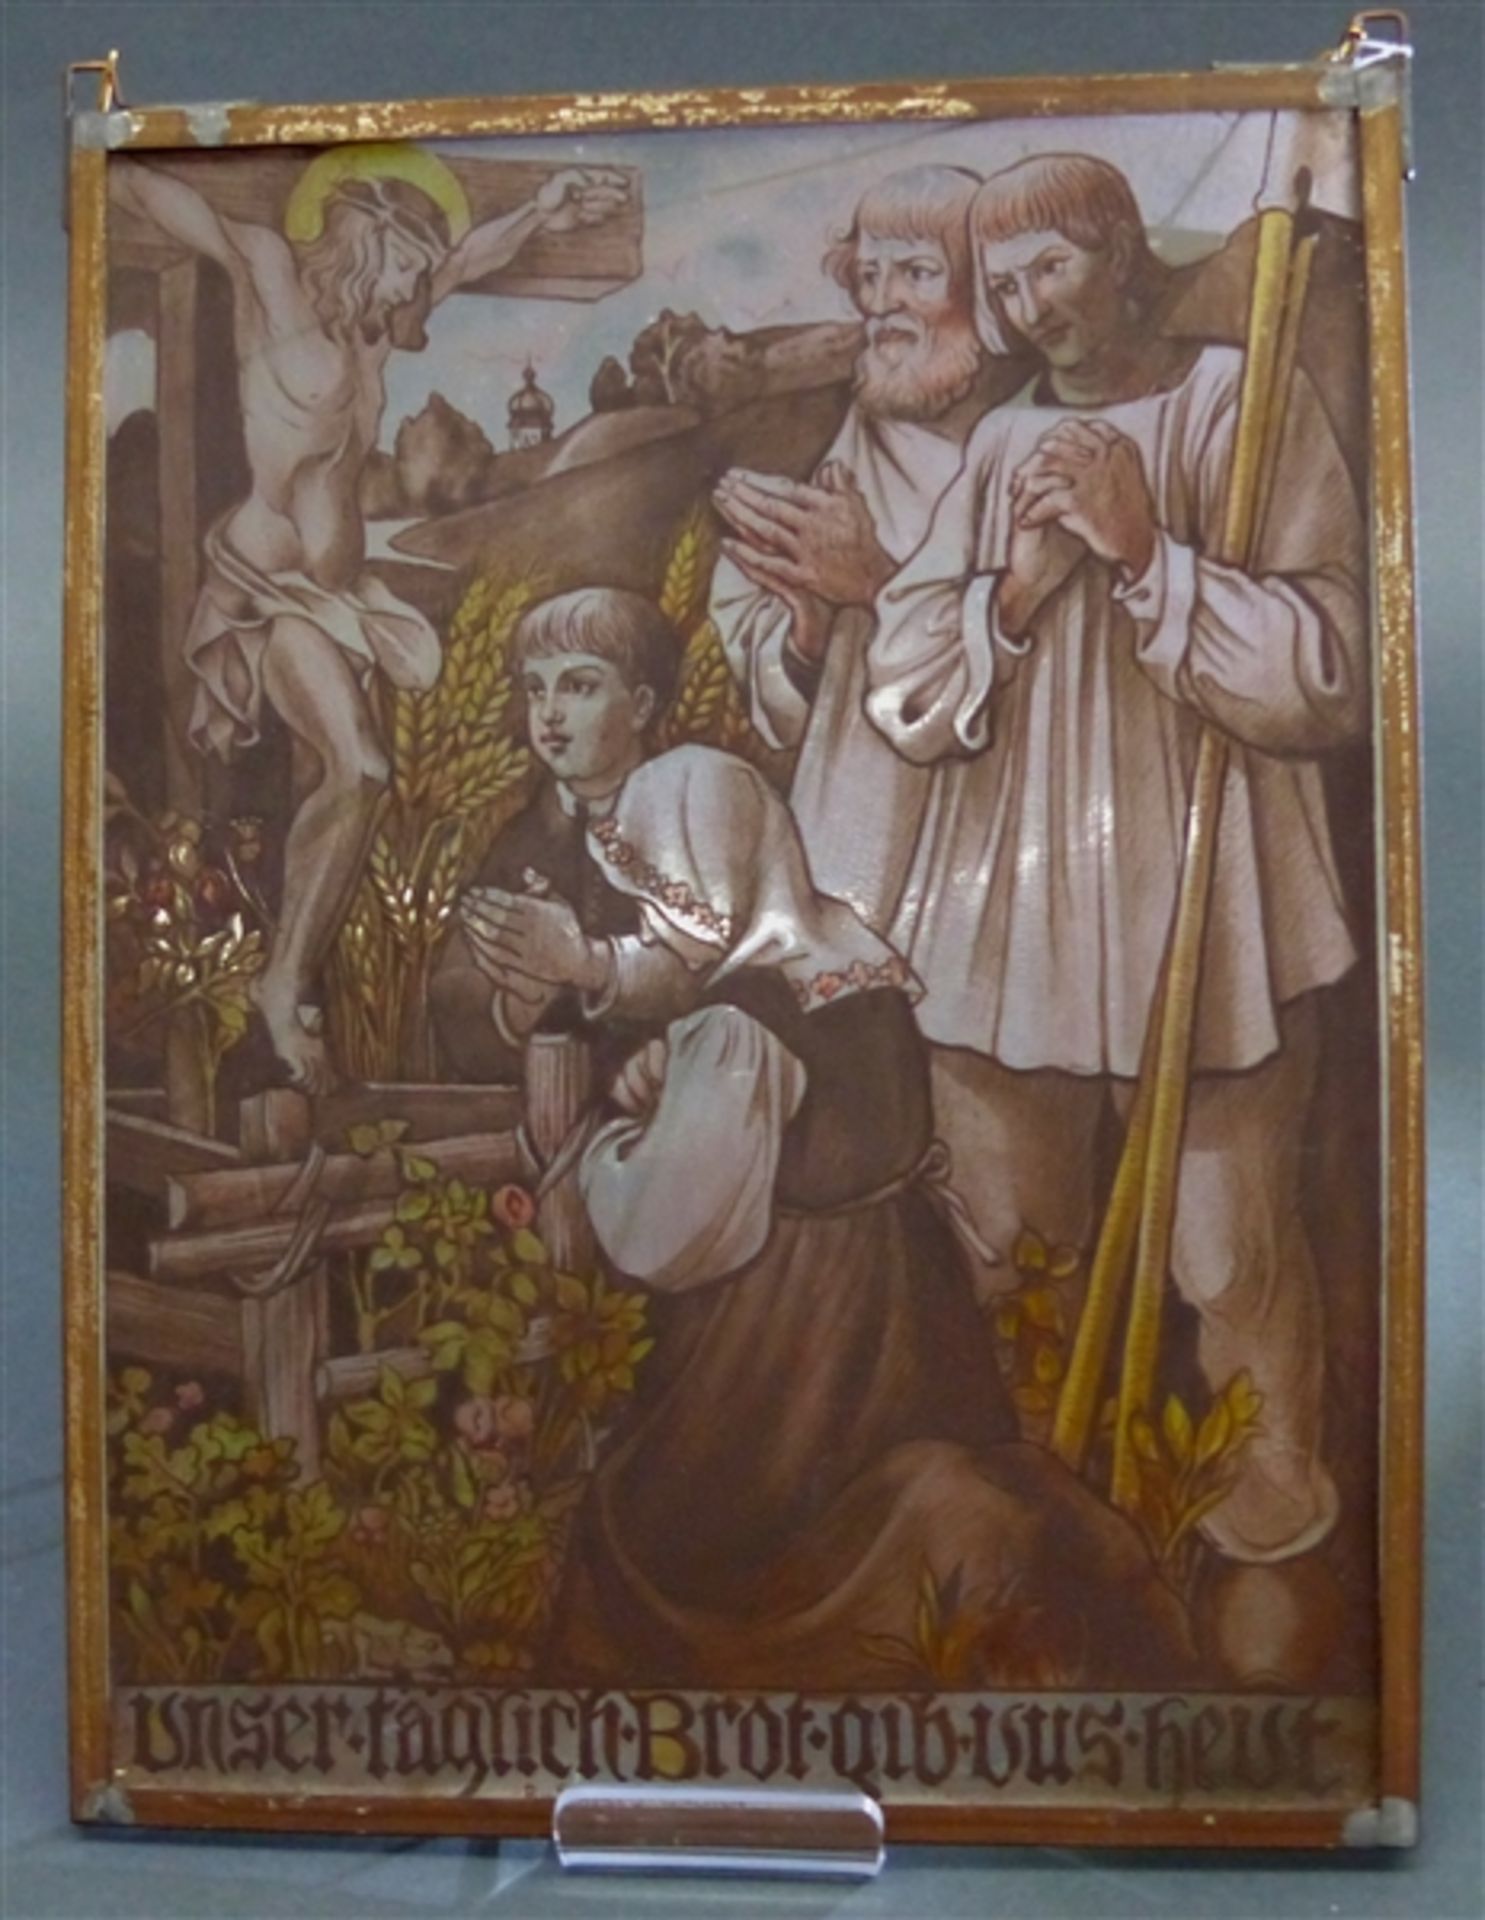 Glasbild Unser täglich Brot gib uns heute, signiert Rudolf Schistl, München, Bauern beten am